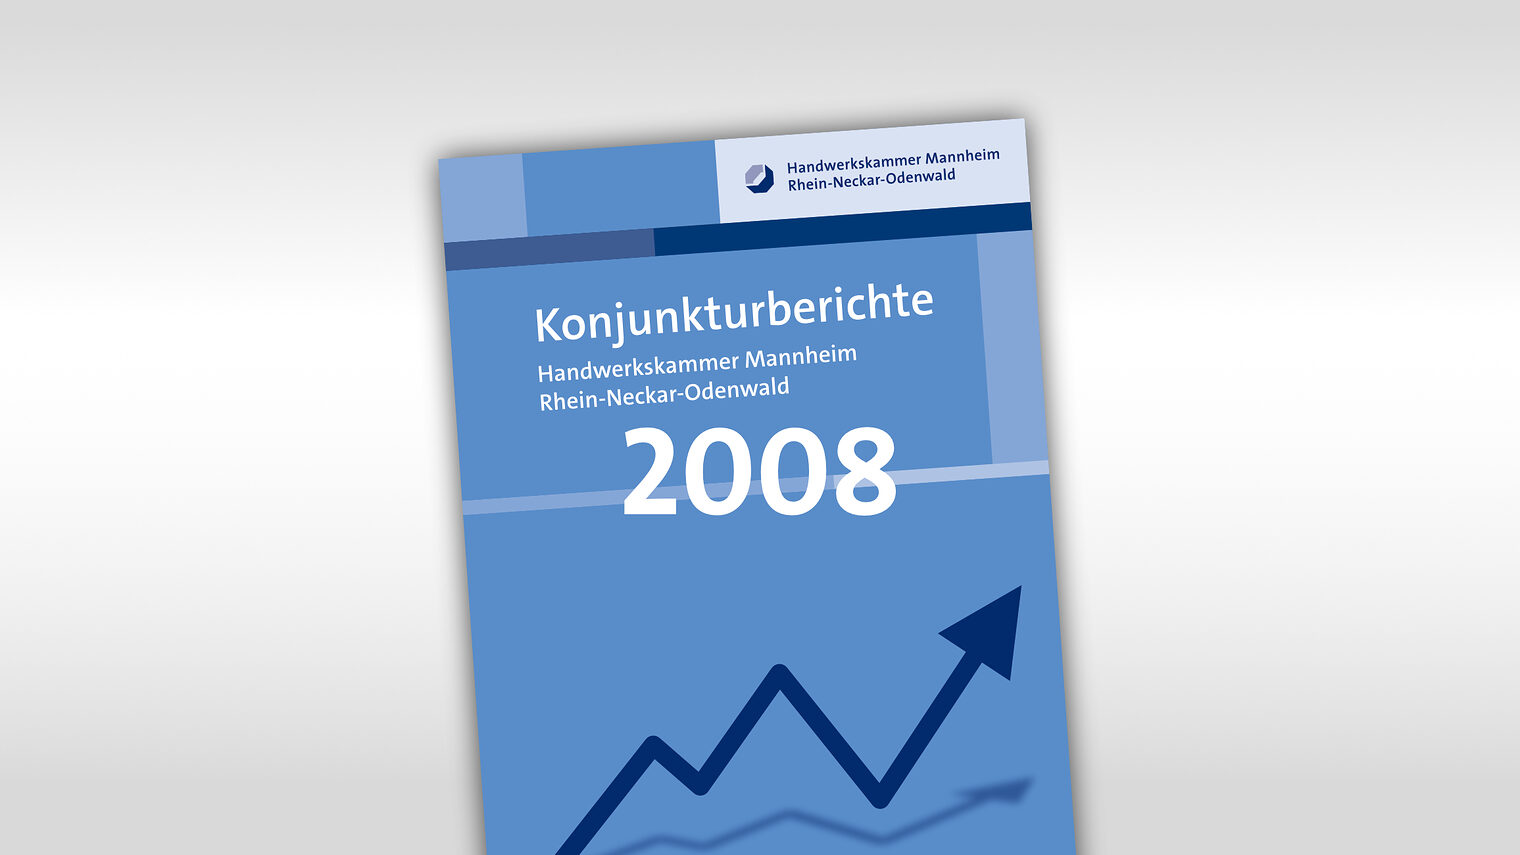 Titelmotiv Konjunkturbericht plus Jahreszahl 2008